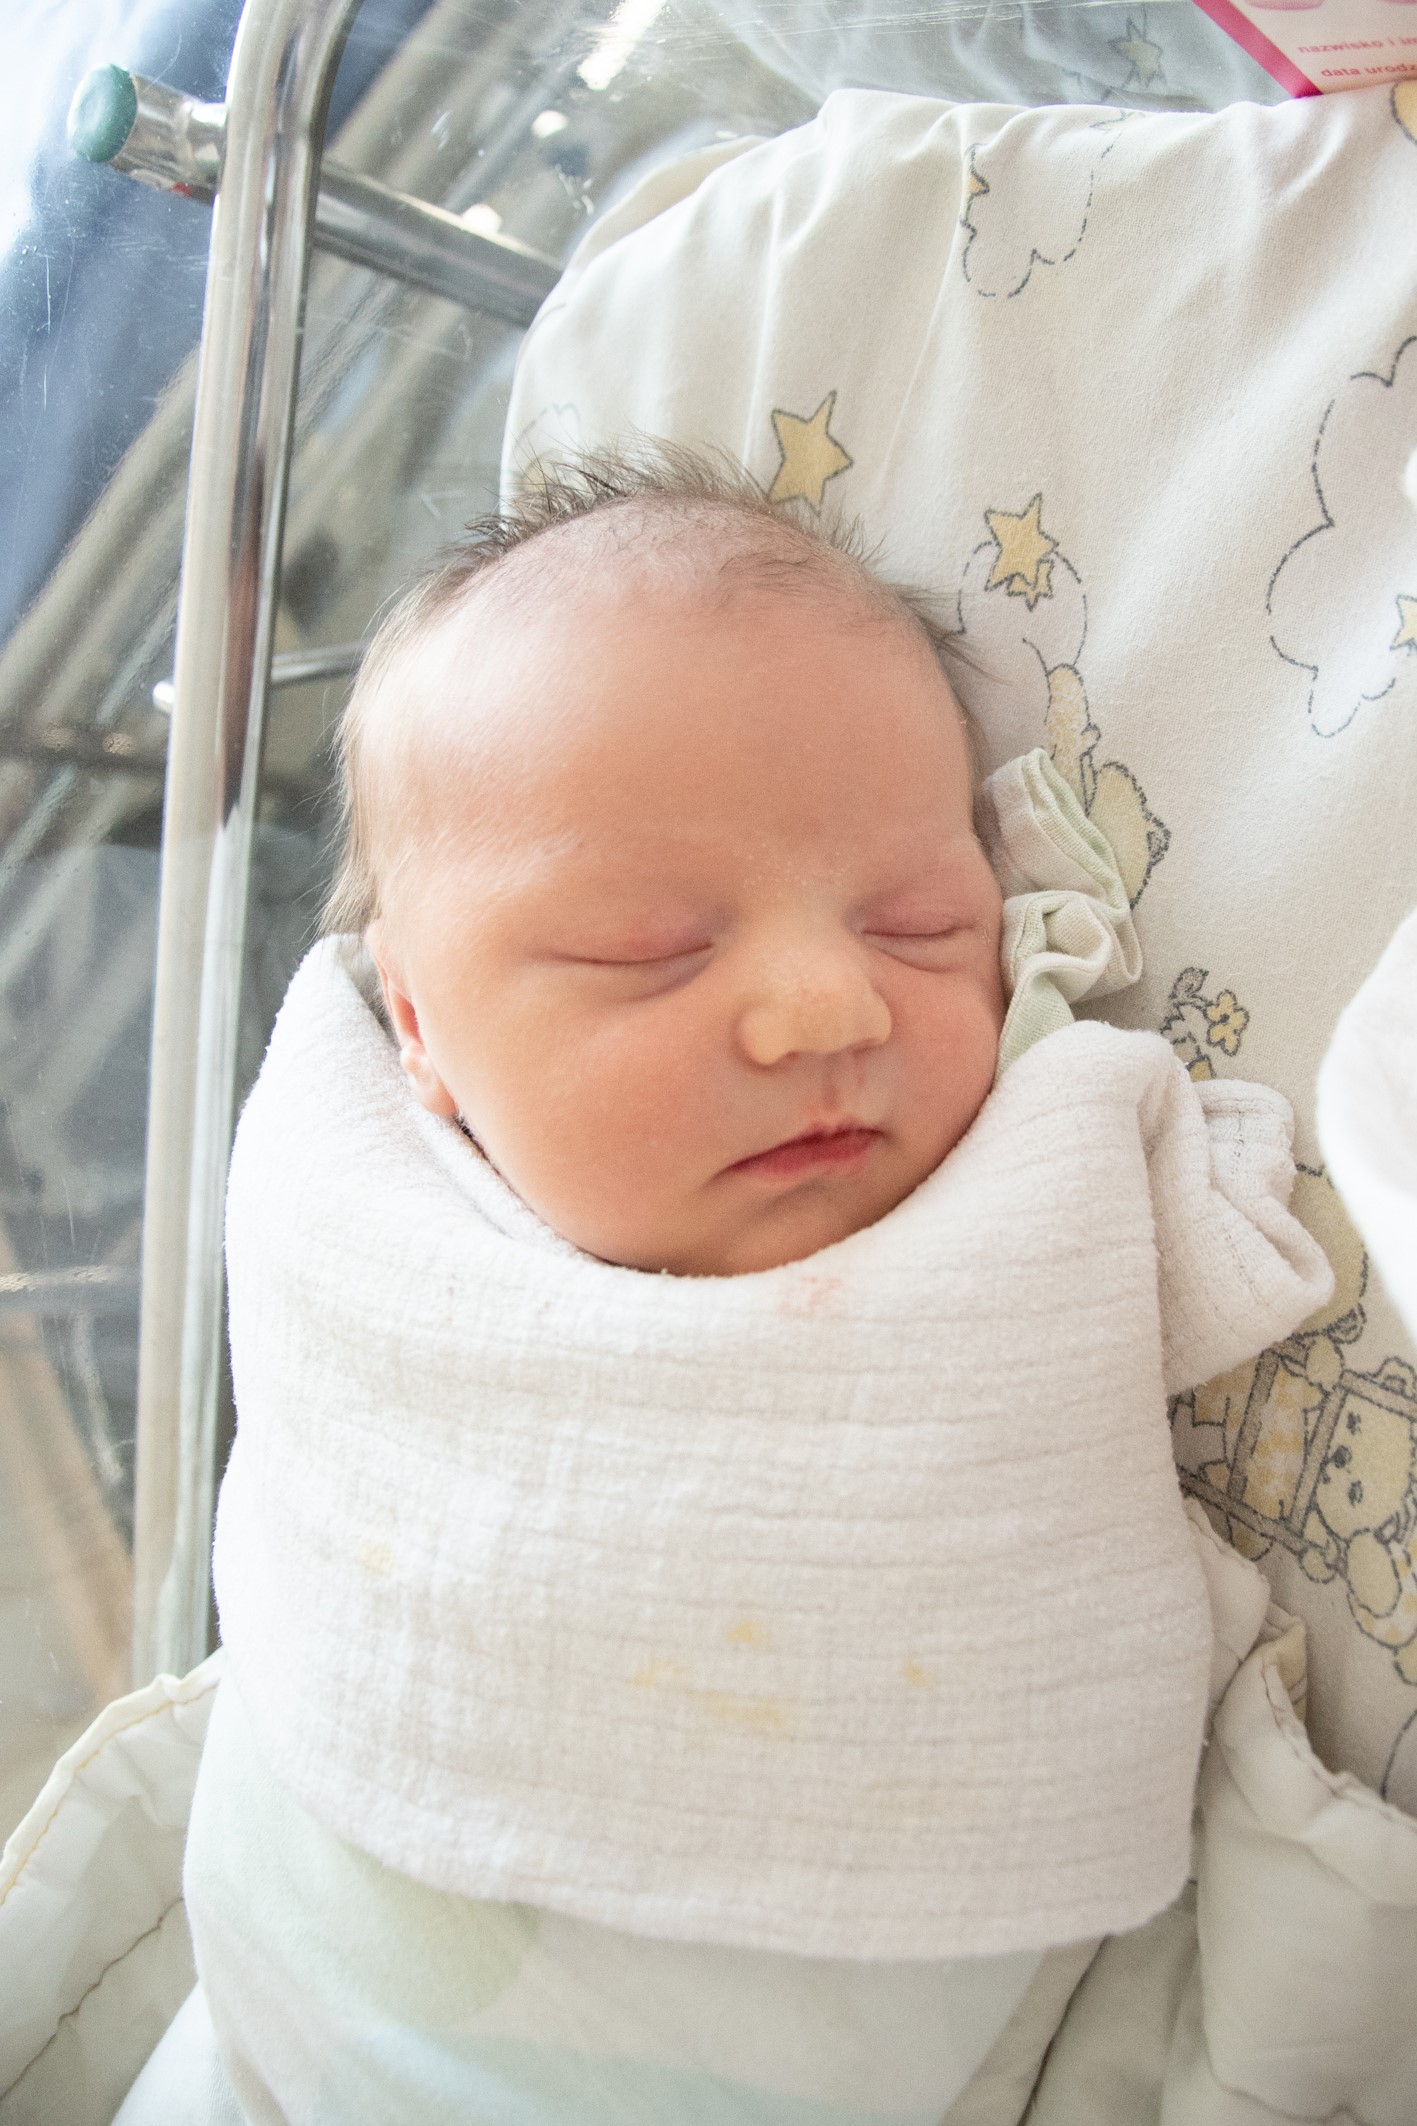 Mała Dominika Kurpińska urodziła się 25.07 o godz. 13.55. Ważyła 4440 g i mierzyła 58 cm. Jej rodzicami są Klaudia i Mateusz z Żor. W domu na Dominikę czeka starszy braciszek Franio.